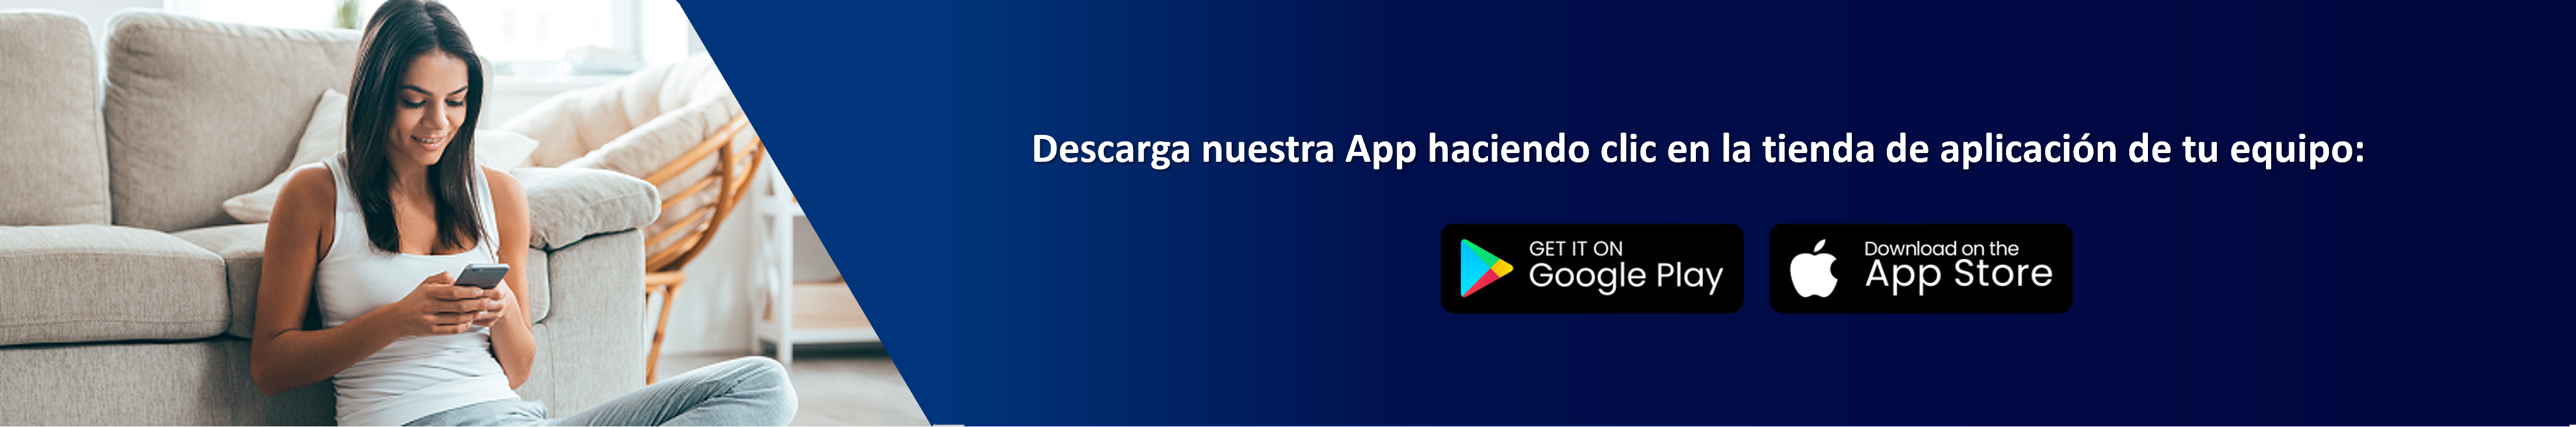 descarga-app.png